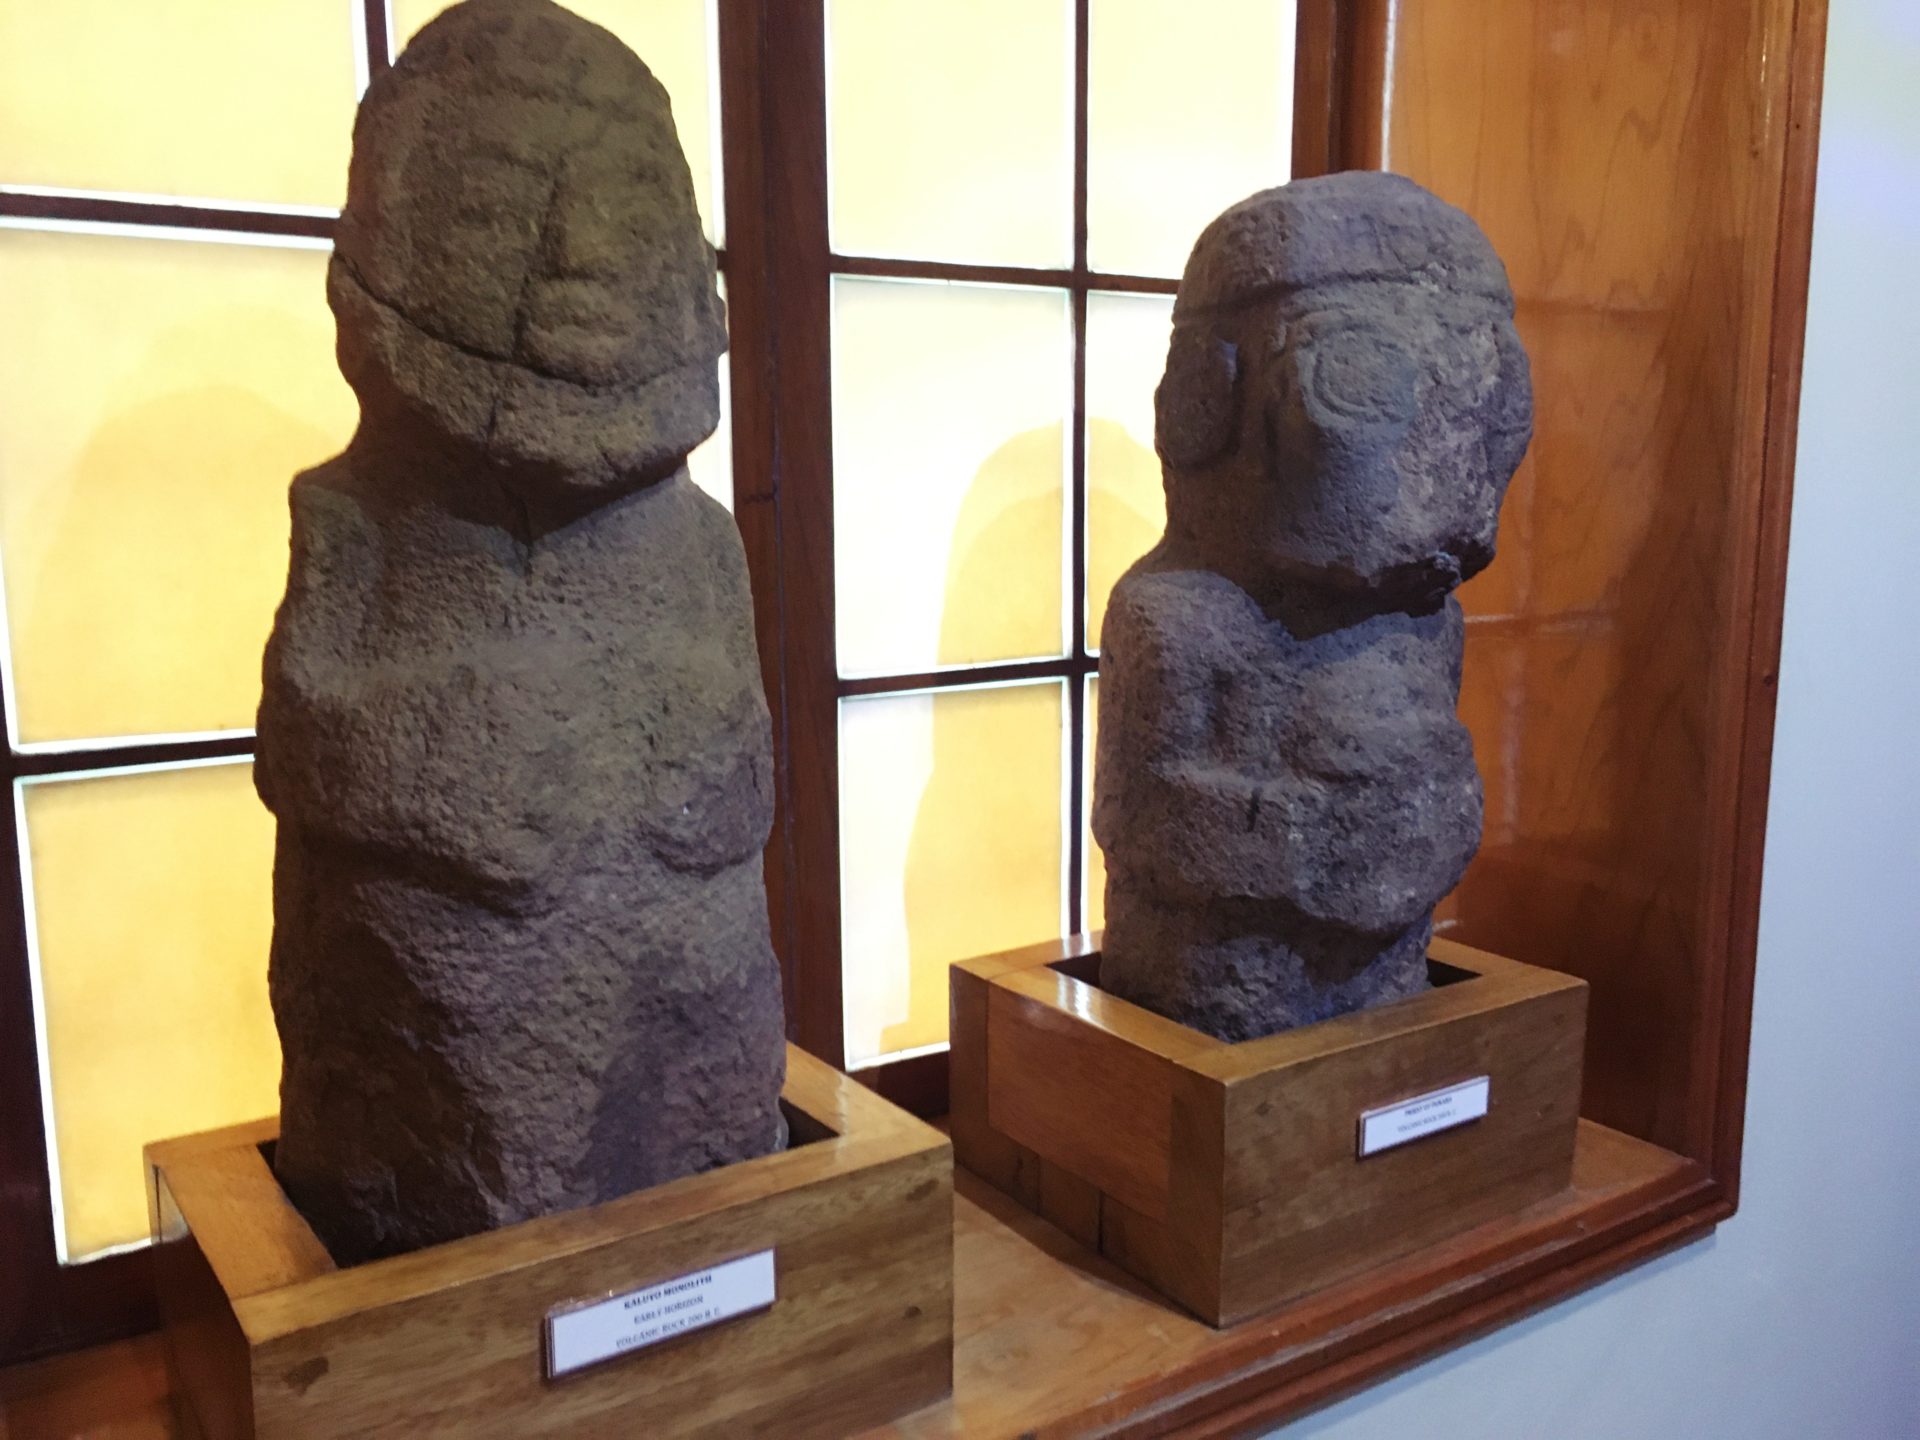 プーノ, チチカカ, 観光, Titicaca, Puno, 博物館, museo